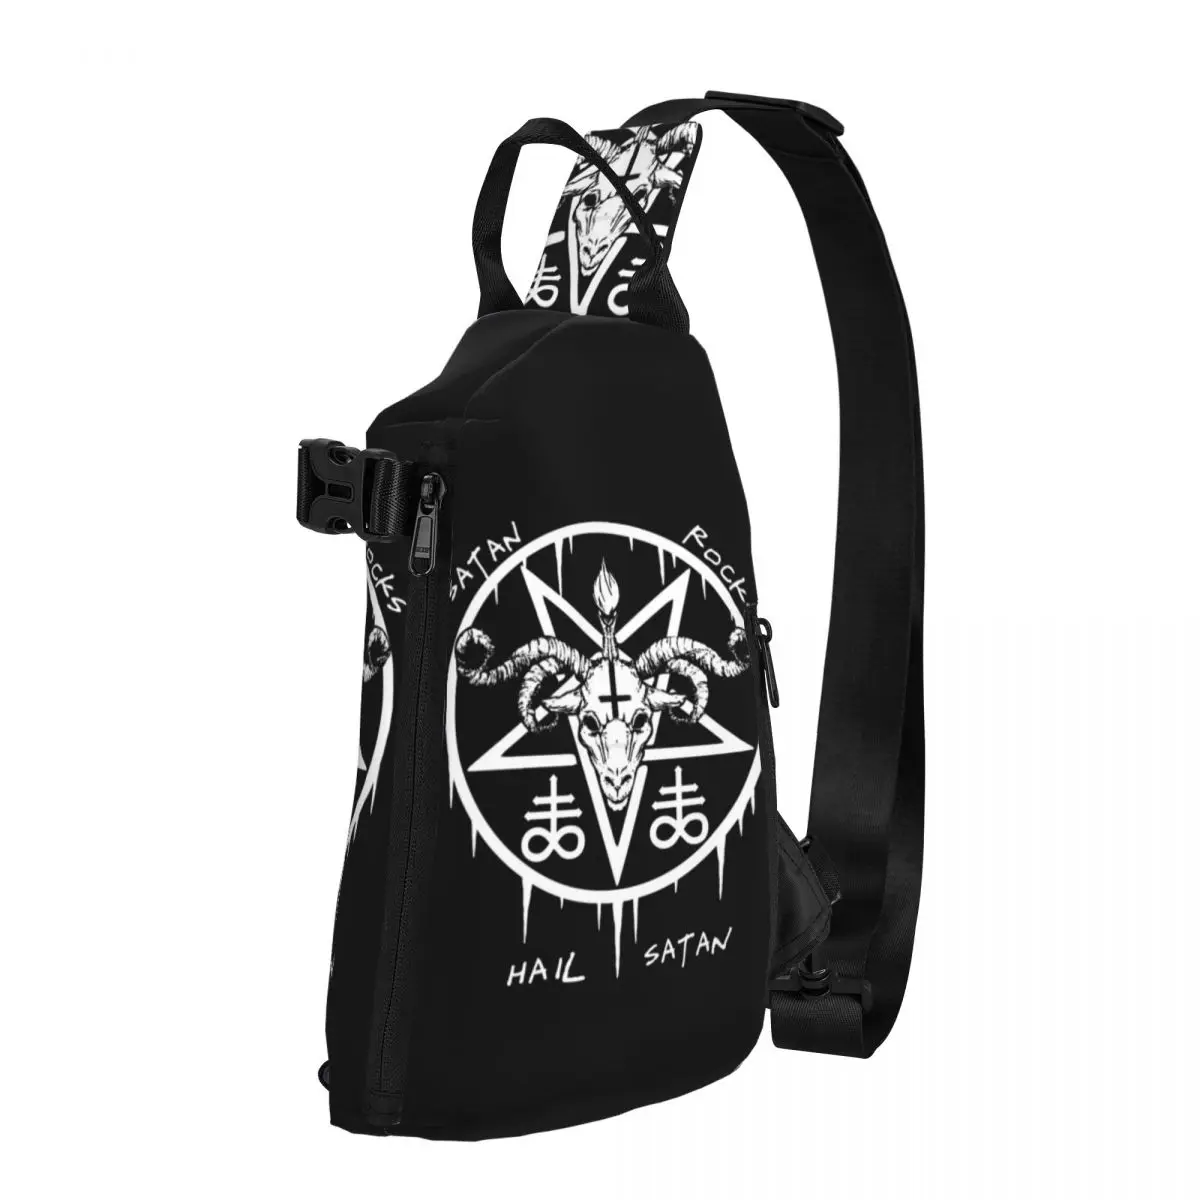 

Baphomet HAIL SATAN ROCKS Chest Bags Men Satanic Occult Graphic Shoulder Bag Aesthetic School Small Bag Trip Running Sling Bags